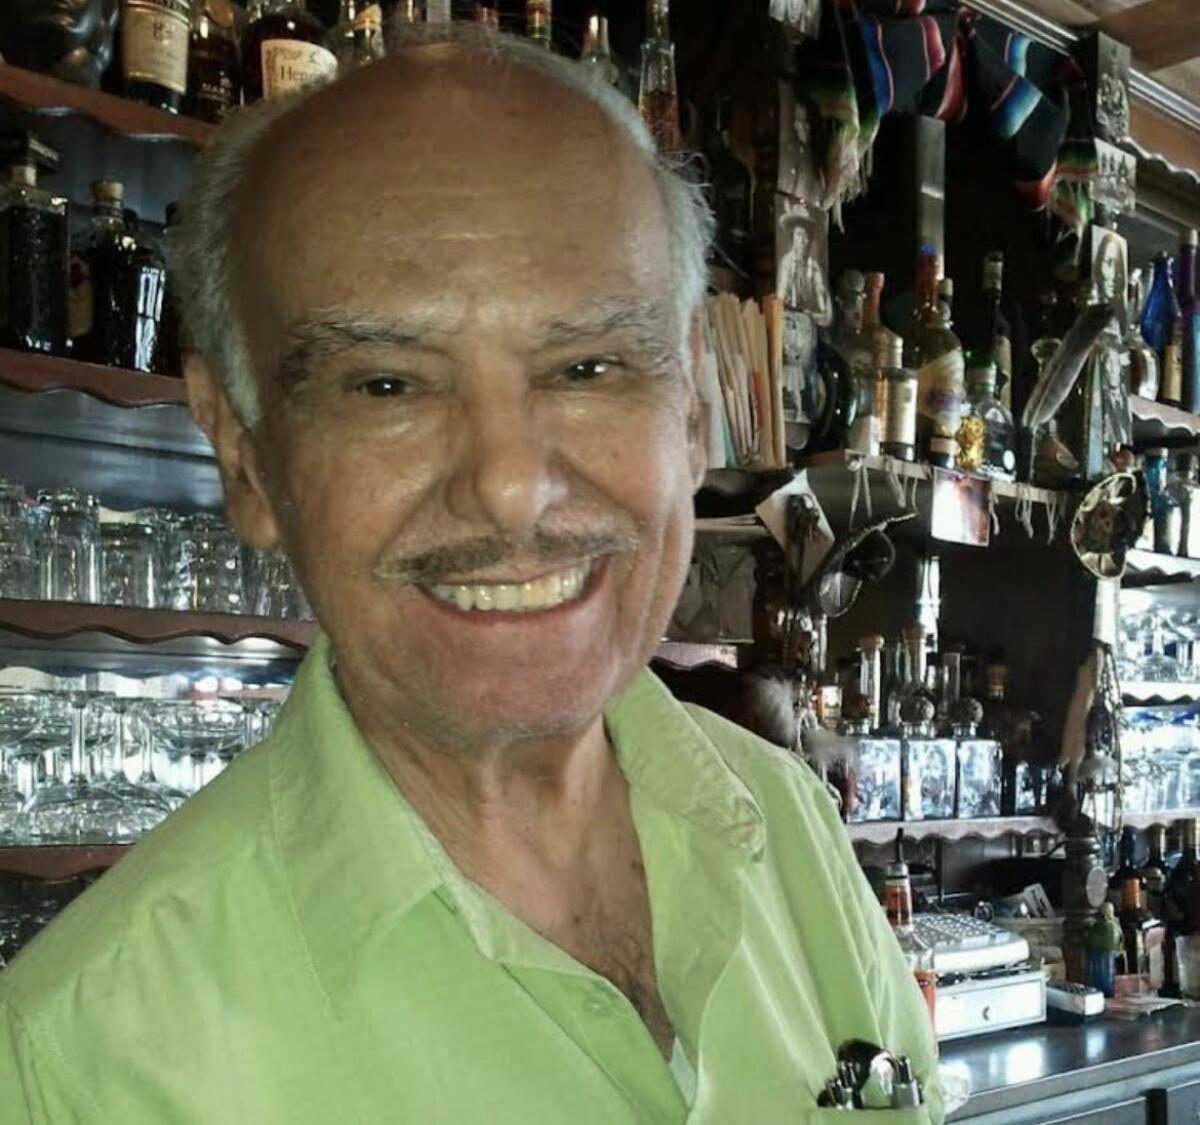 Antonio Gutierrez at his Melrose Avenue restaurant around 2013.